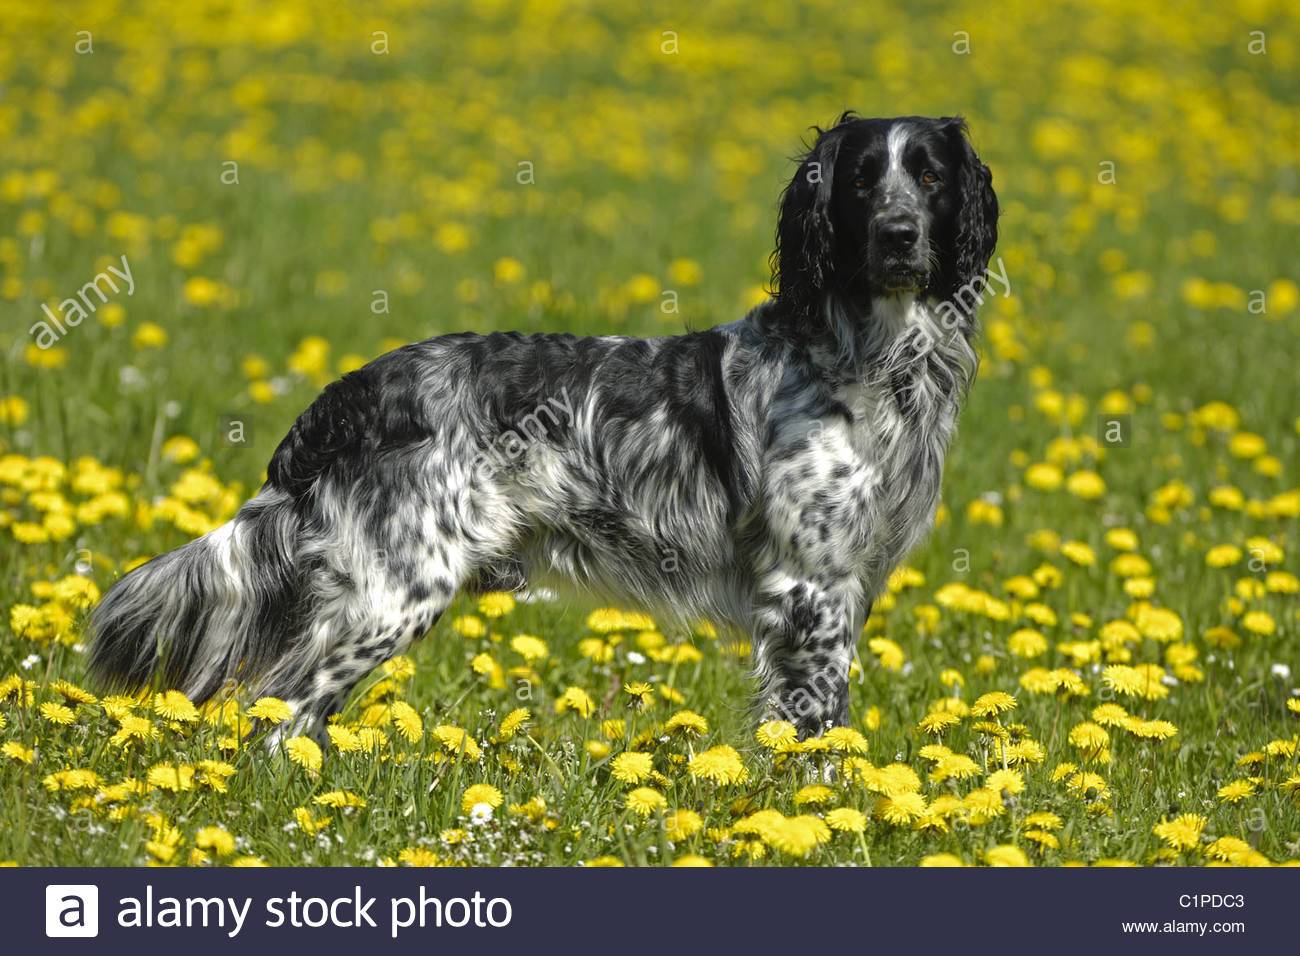 Большой мюнстерлендер: подробное описание породы, фото собак